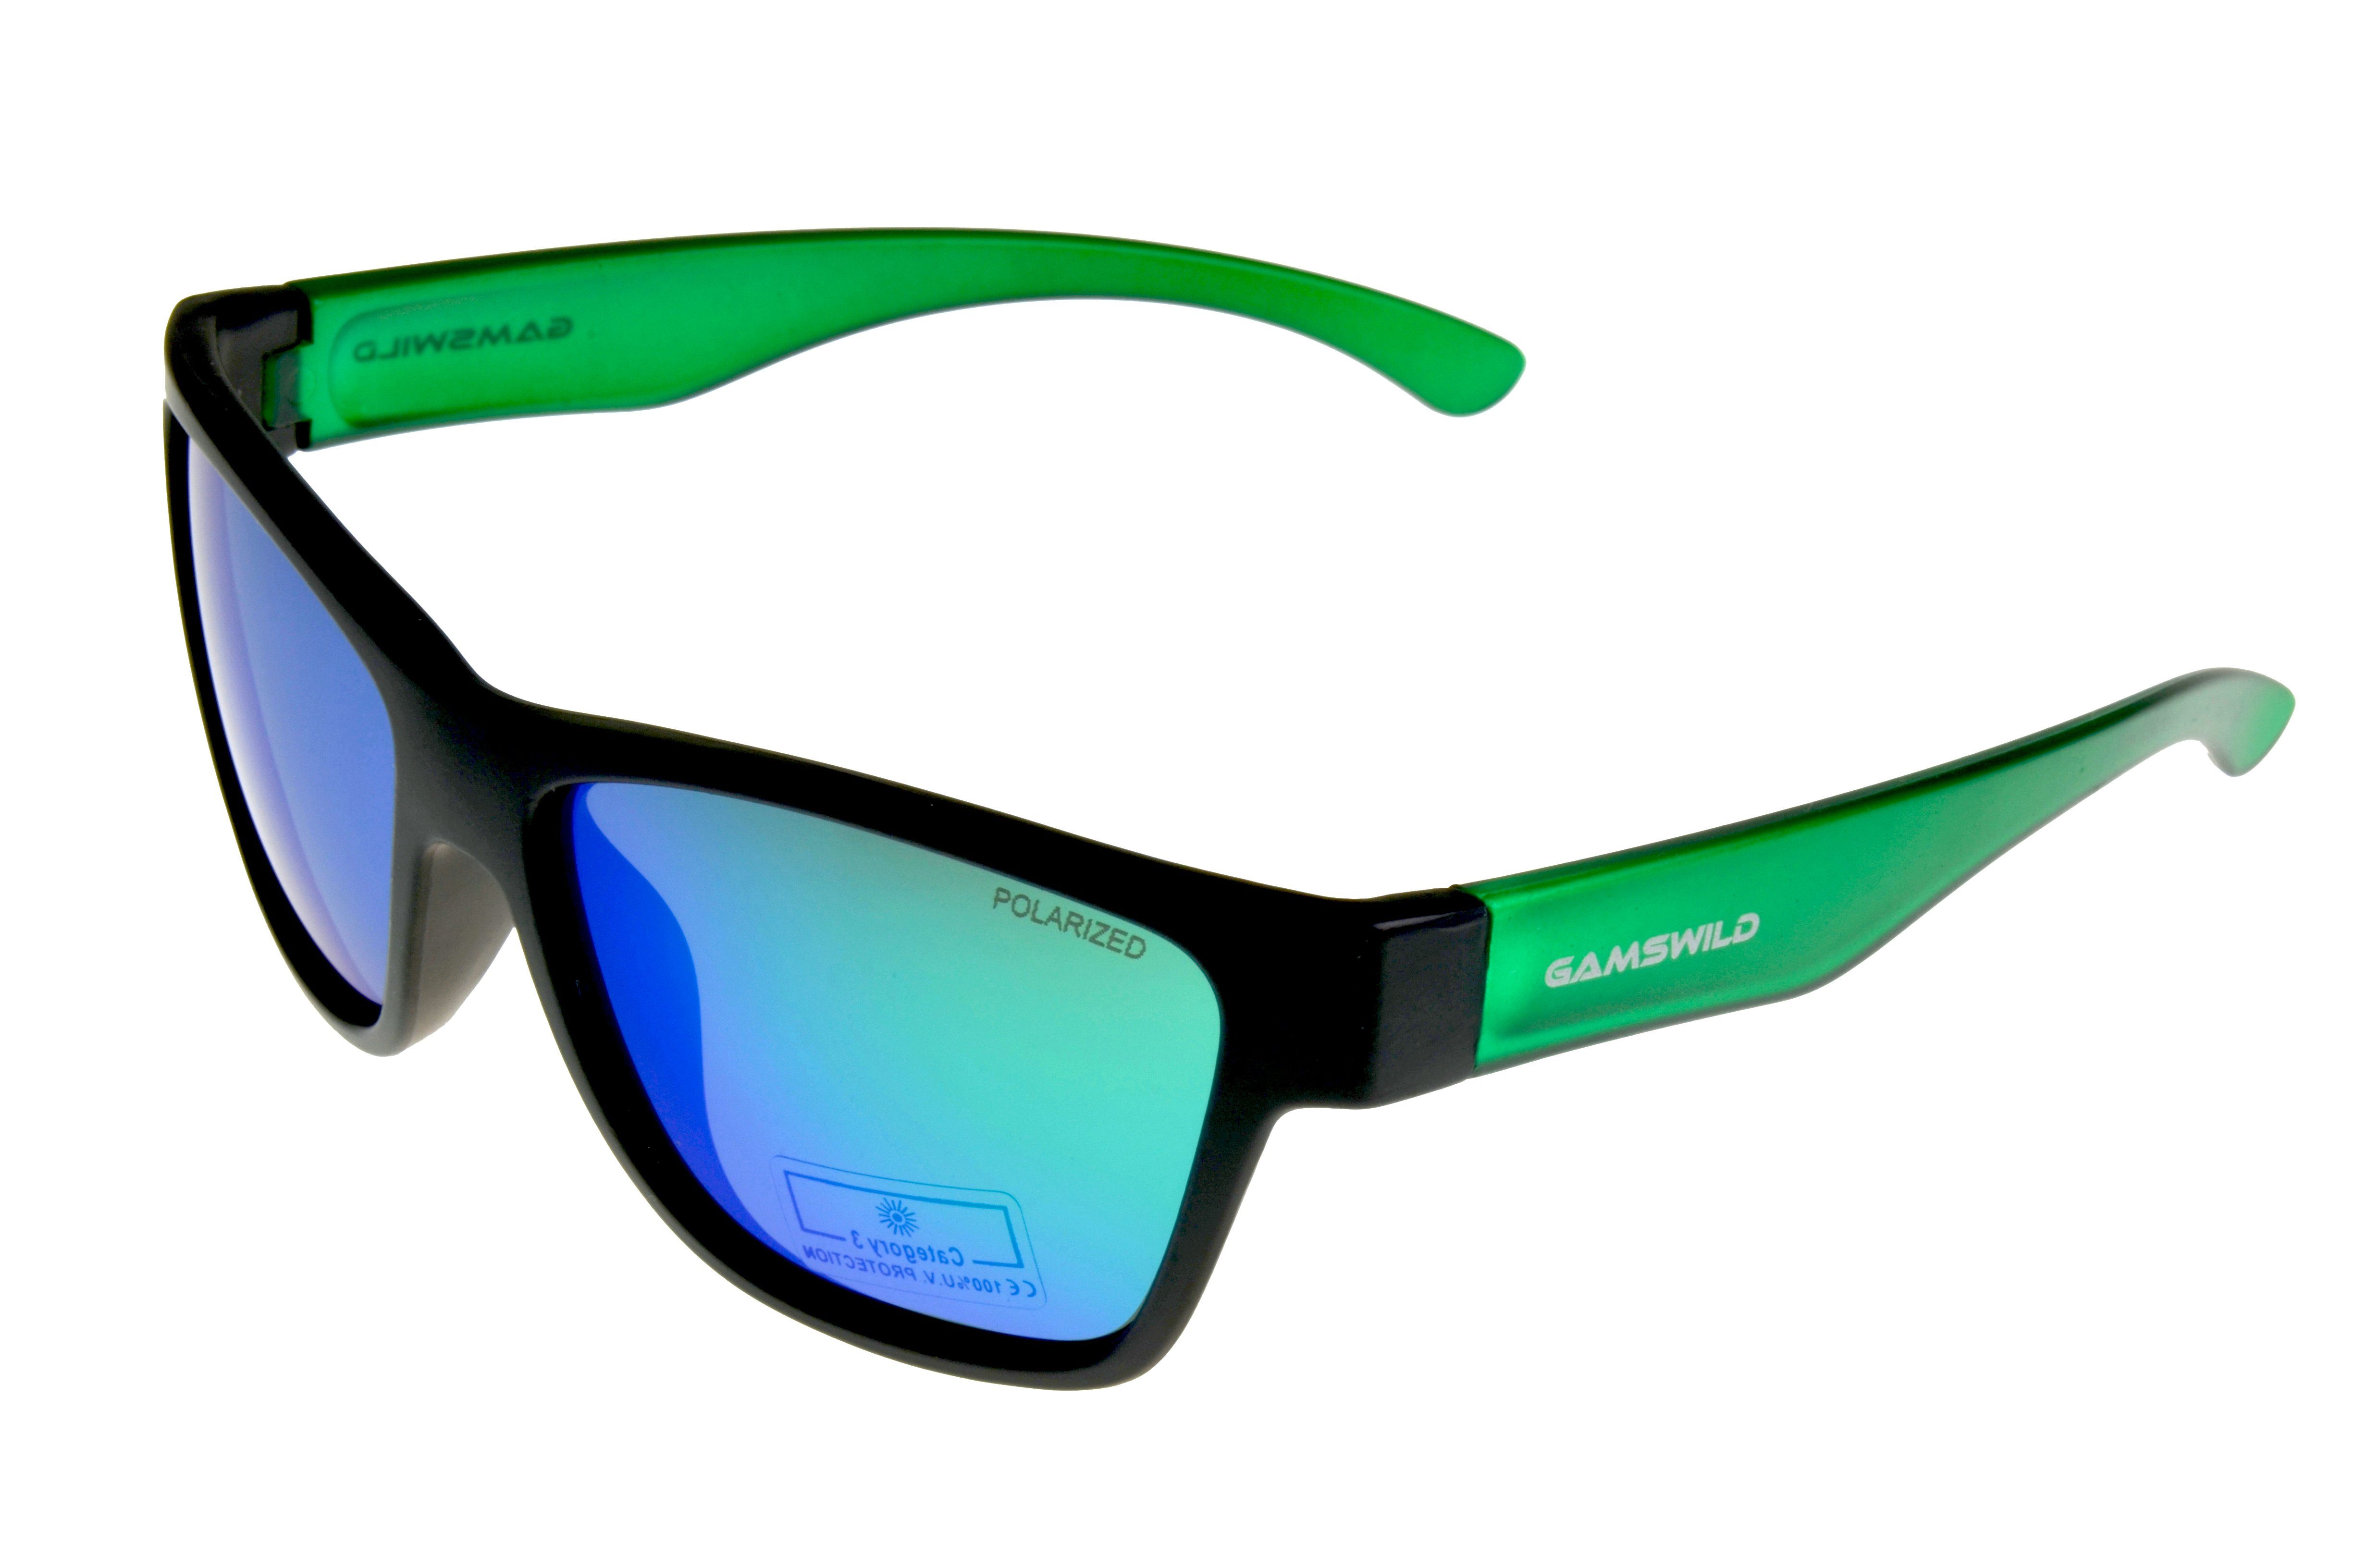 Gamswild Sonnenbrille WJ2118 GAMSKIDS Jugendbrille 8-18 rot, "polarisierte halbtransparenter Unisex grün, blau Rahmen Gläser" kids Jahre Kinderbrille NEU